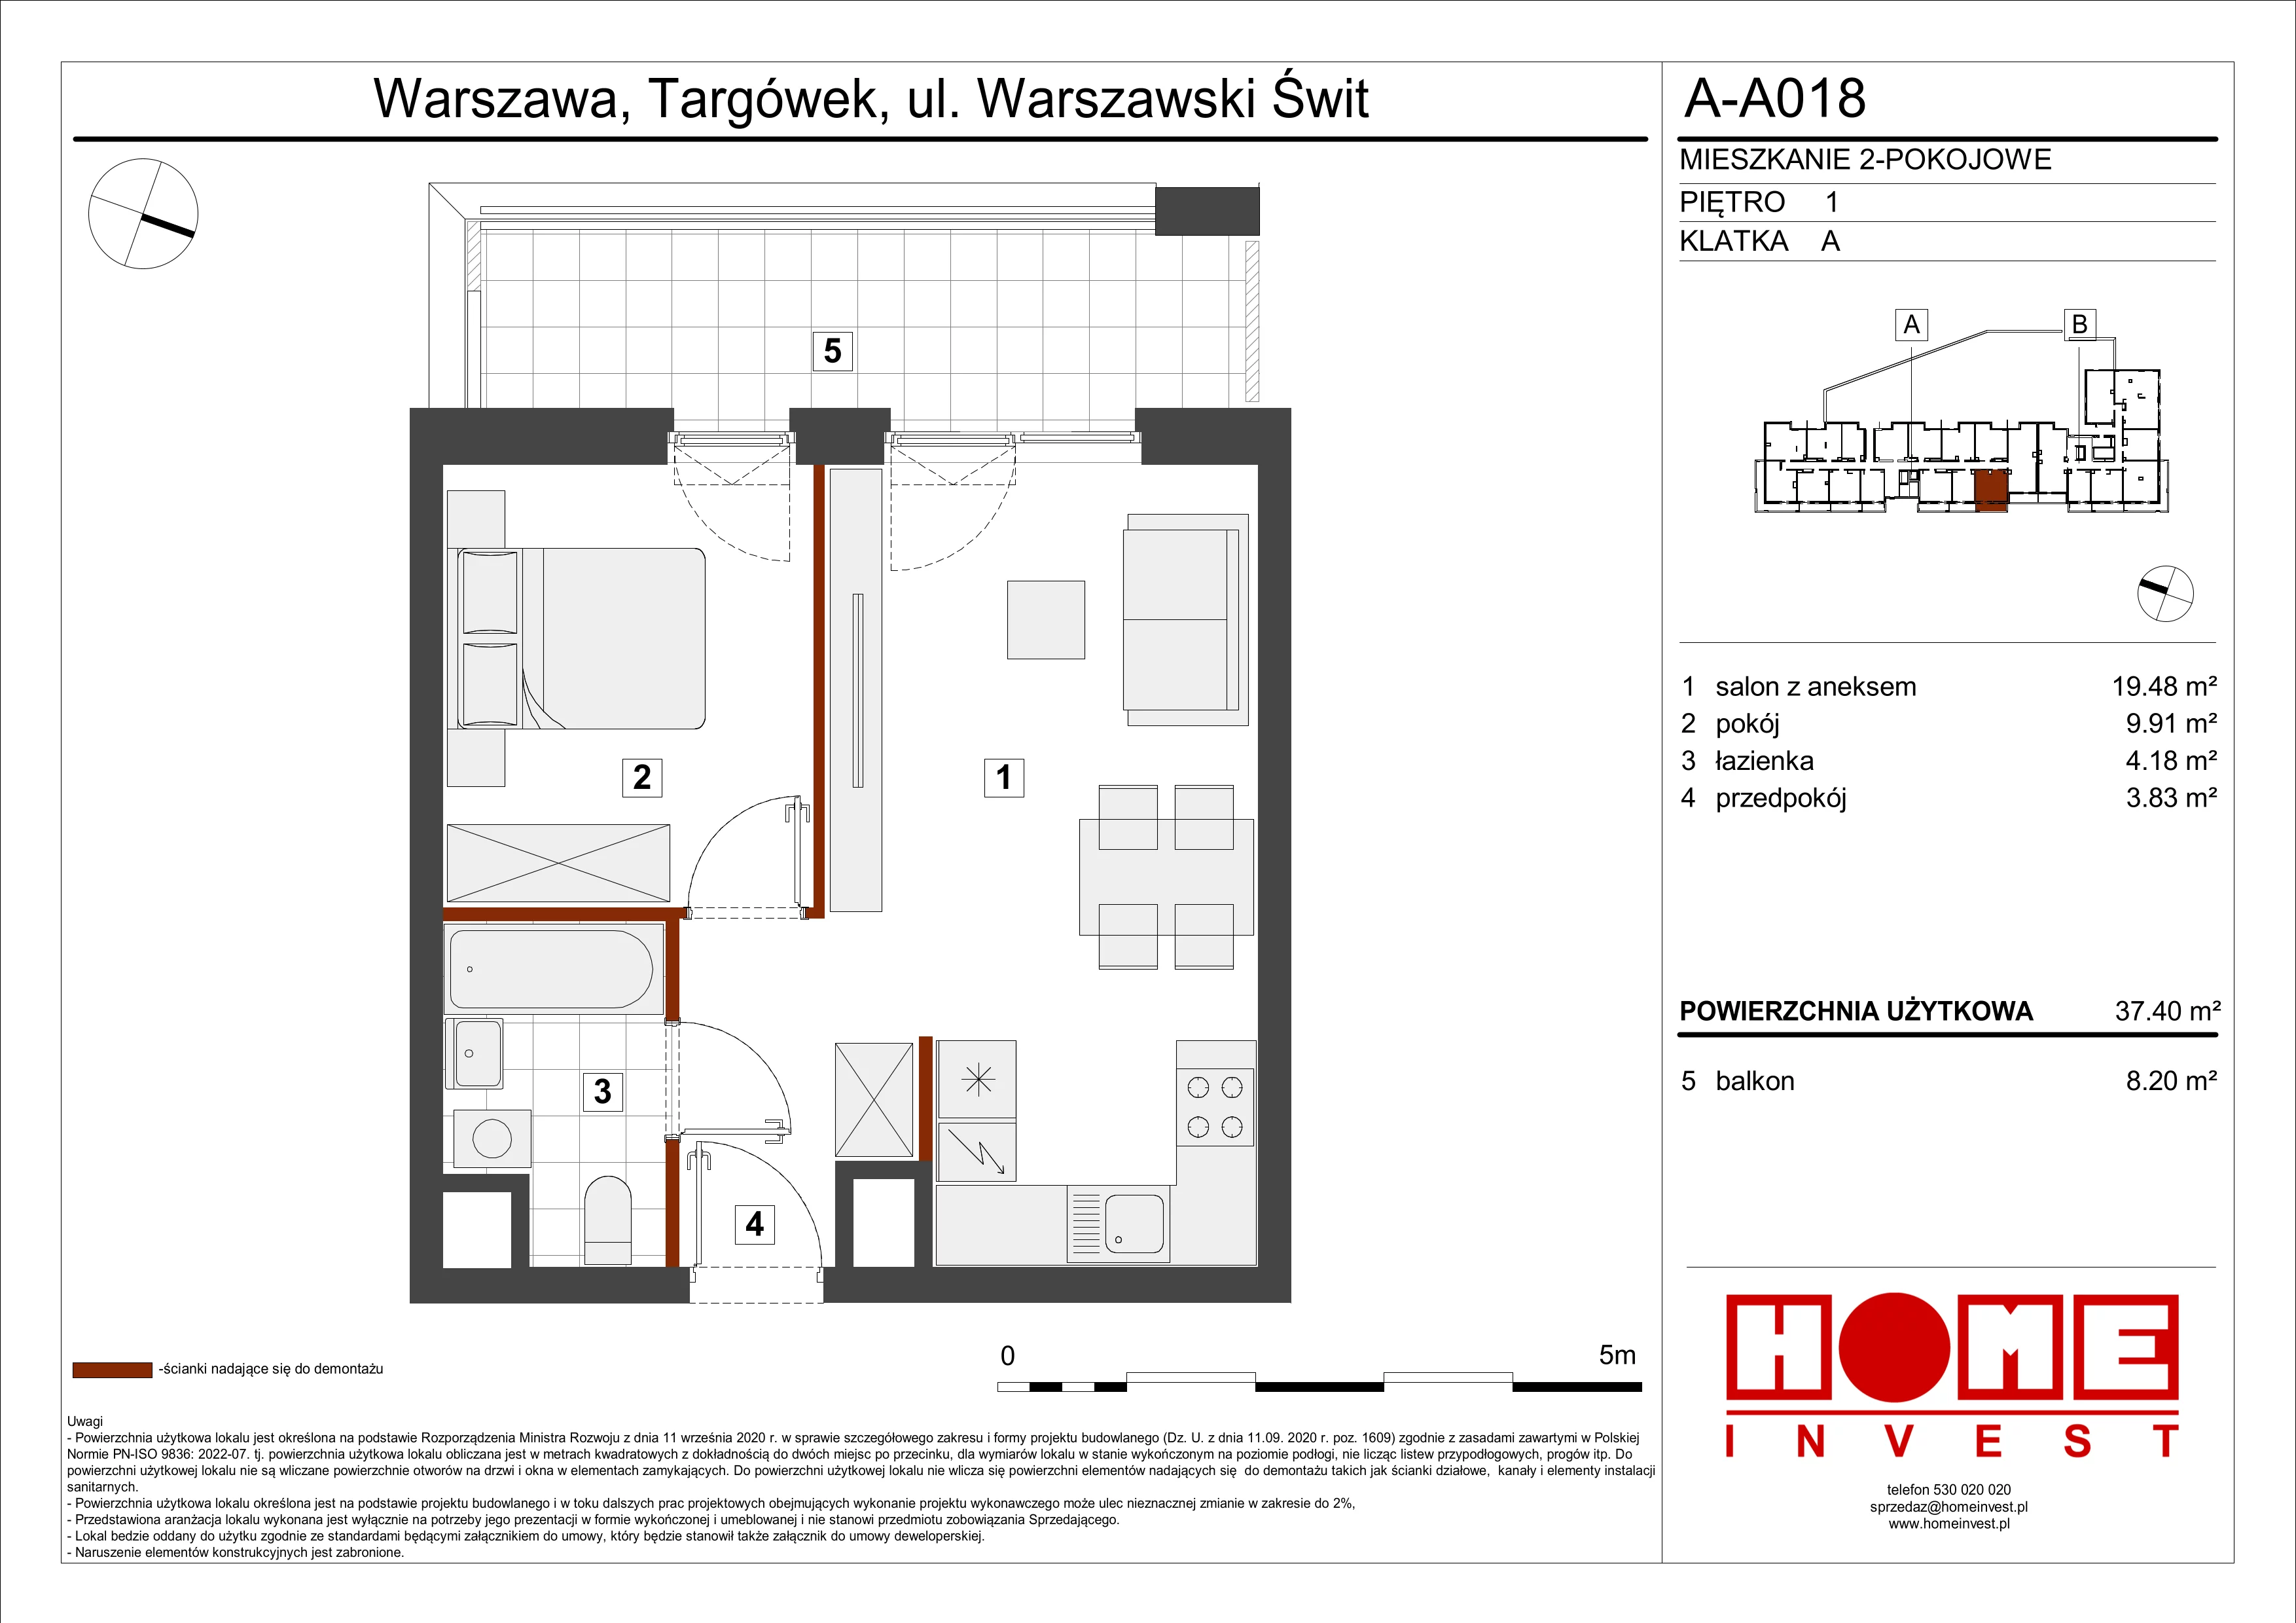 Mieszkanie 37,40 m², piętro 1, oferta nr A-A018, Warszawski Świt, Warszawa, Targówek, Bródno, ul. Warszawski Świt 5